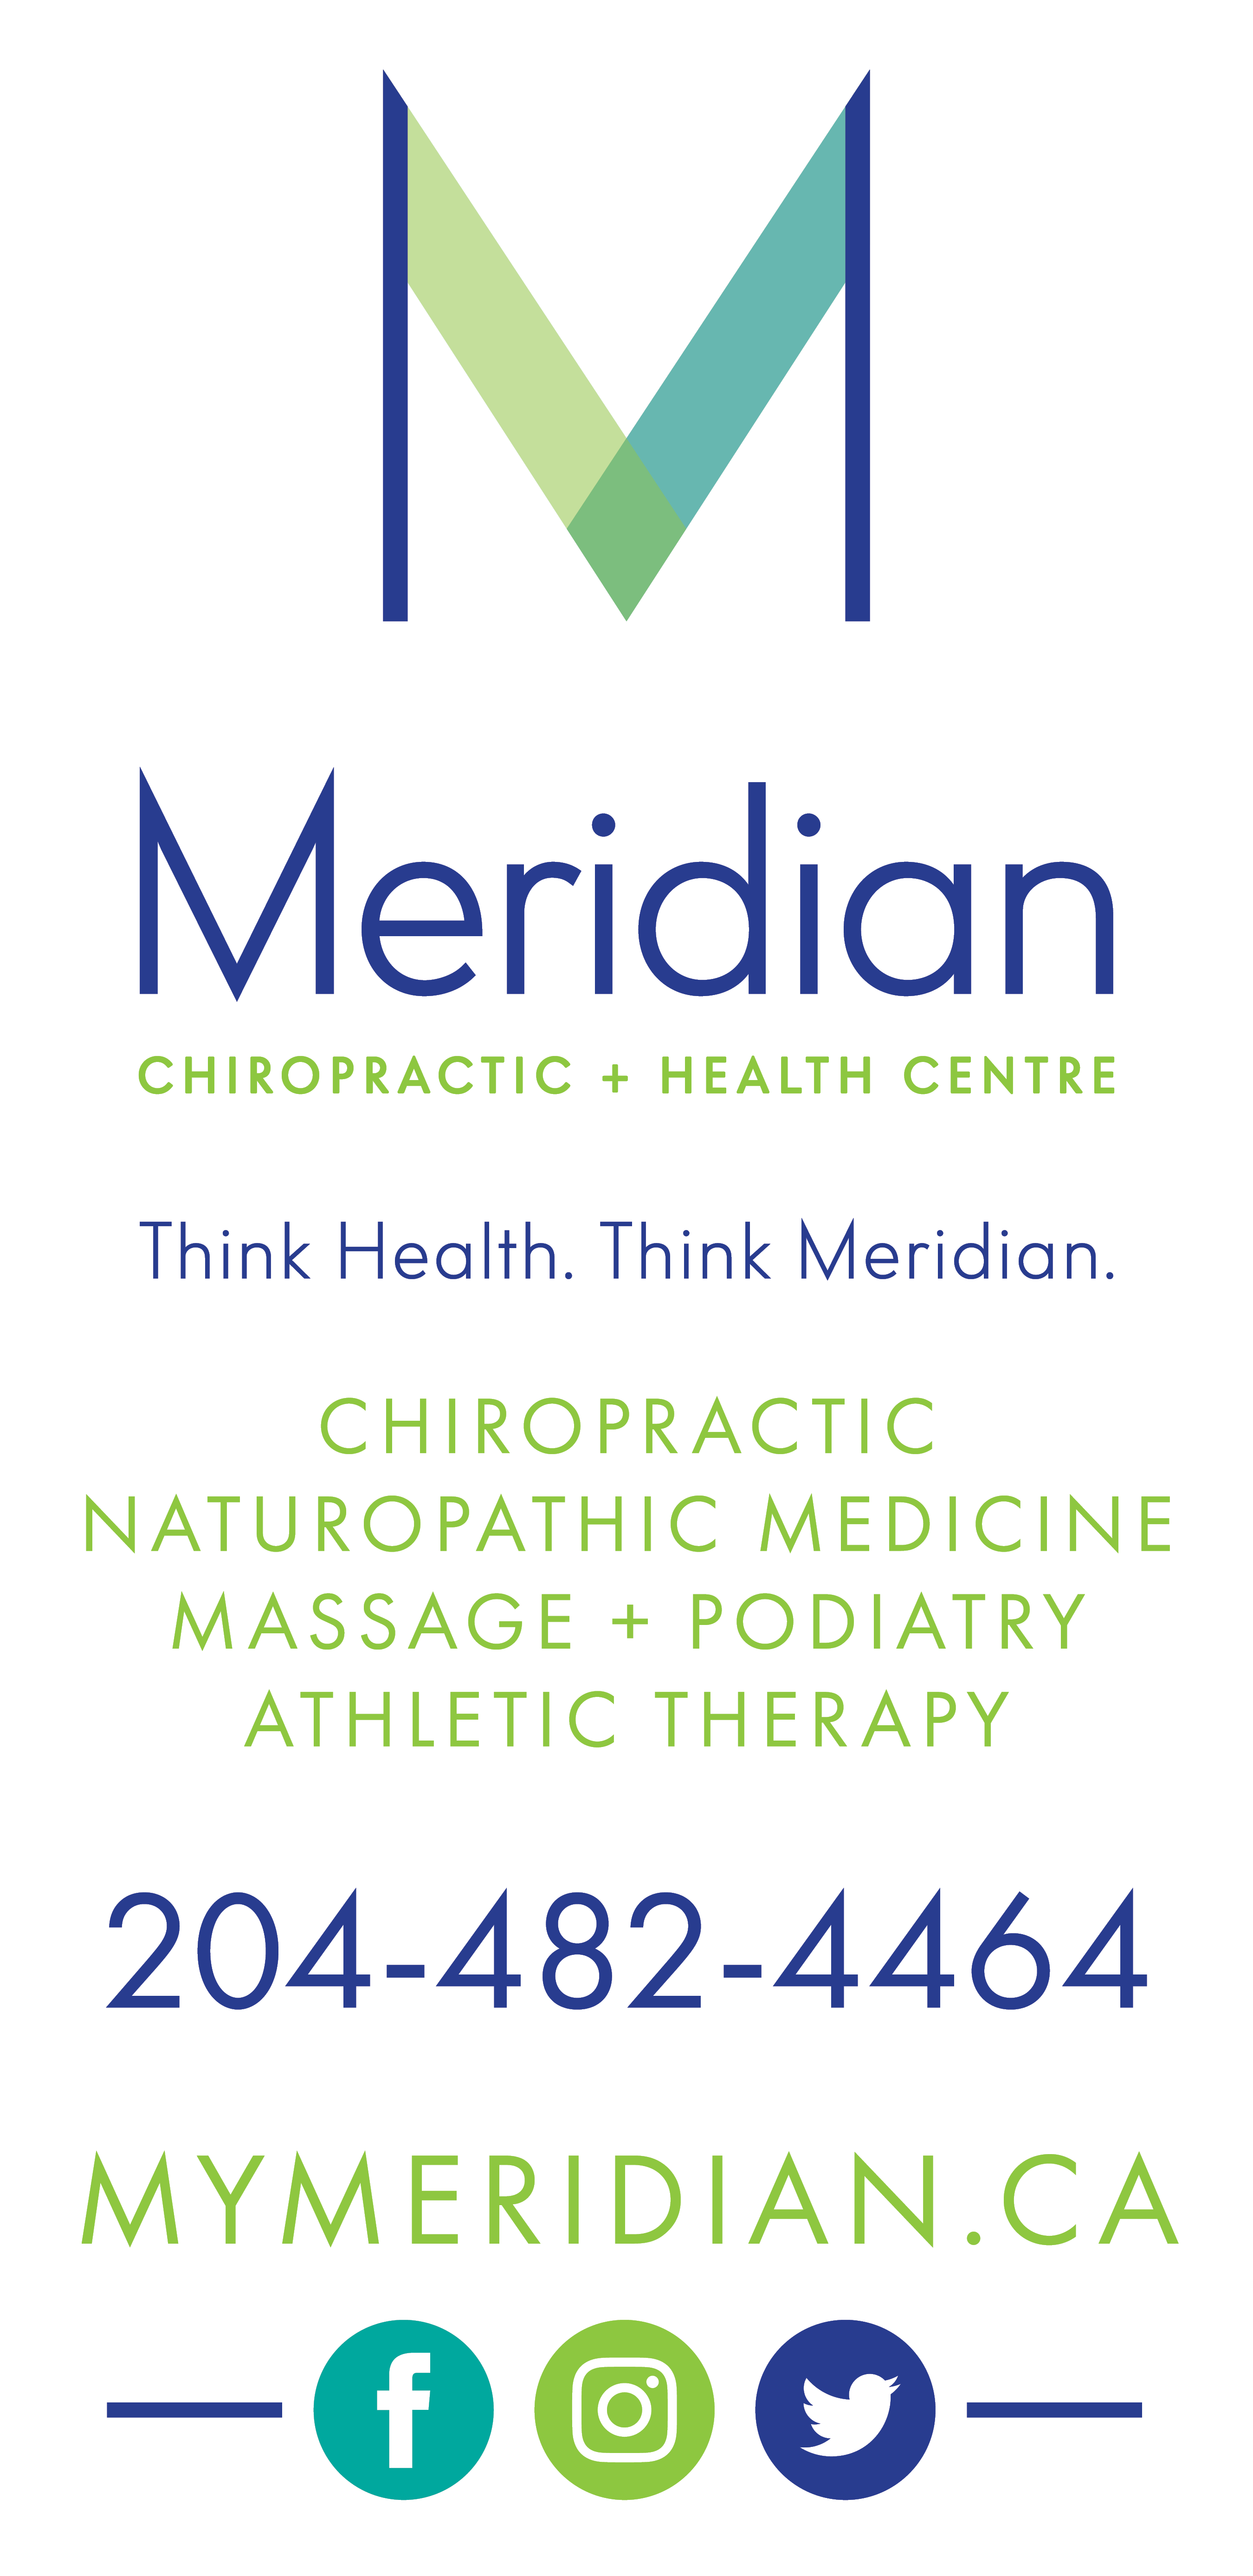 Meridian Chiropractic + Health Centre